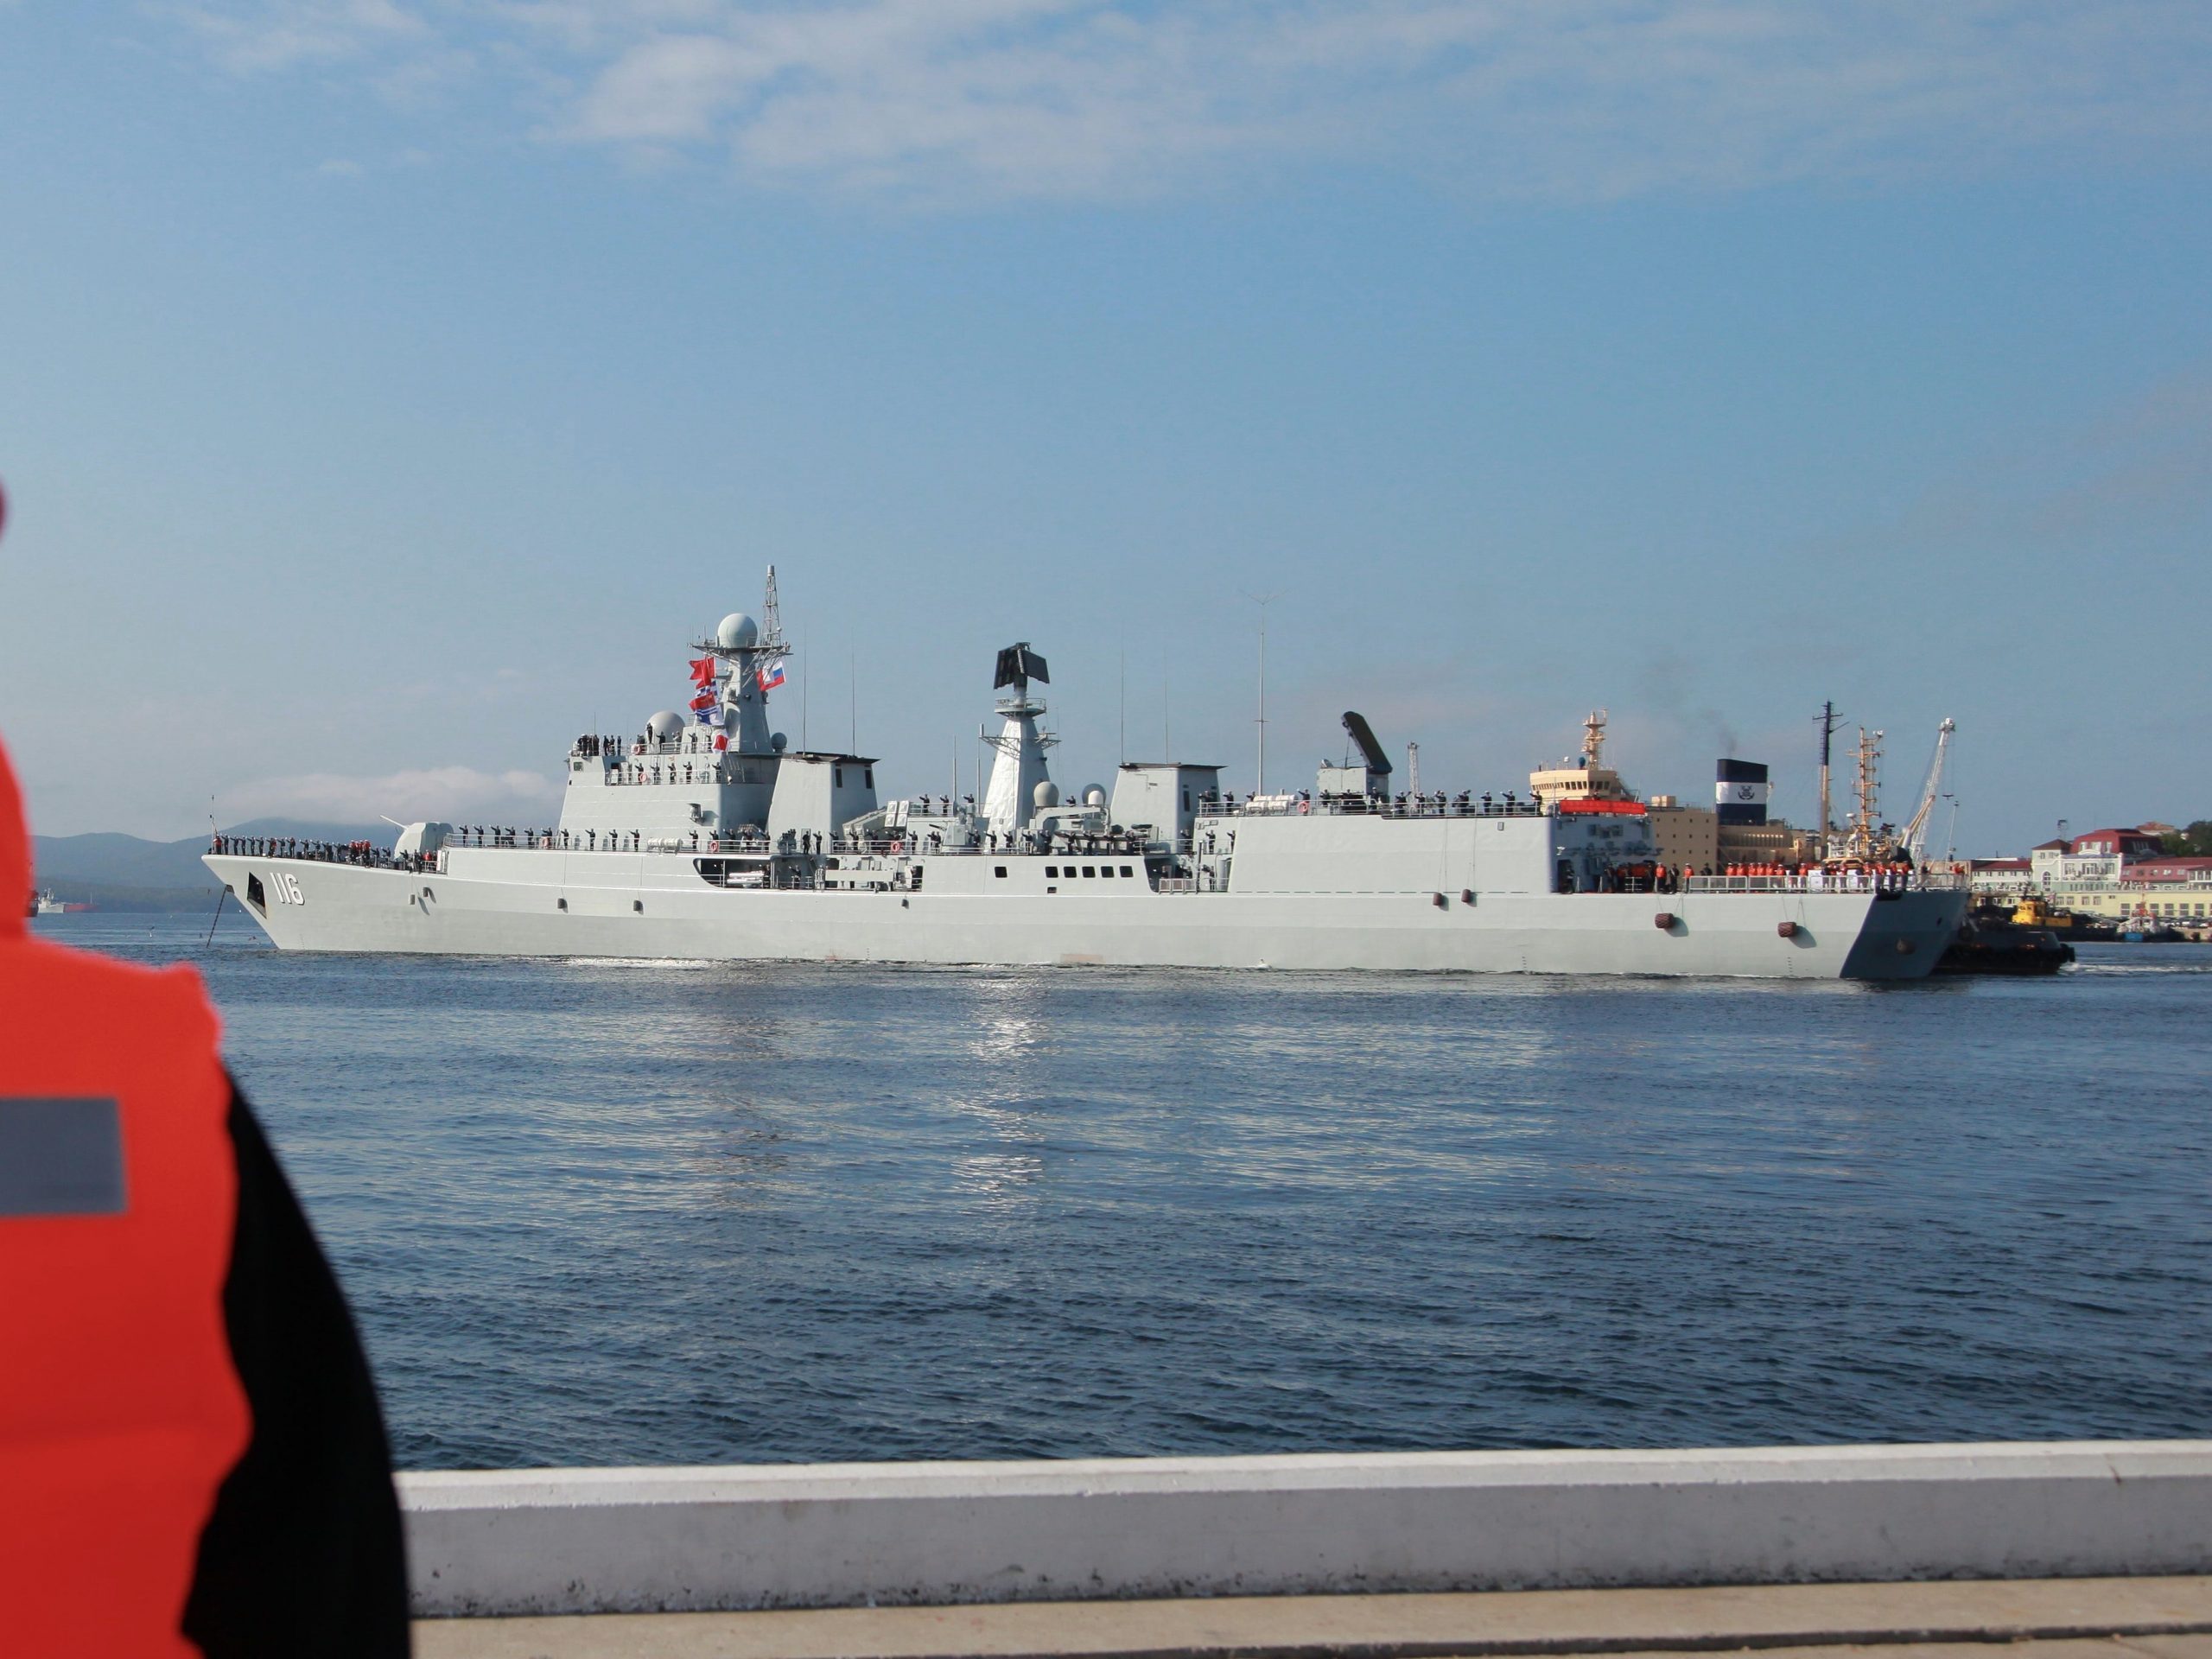 De Shijiazhuang (DDG-116), een type 051C raket destroyer arriveert in de Russische havenstad Vladivostok, gelegen nabij de Noord-Koreaanse grens op 18 september 2017.